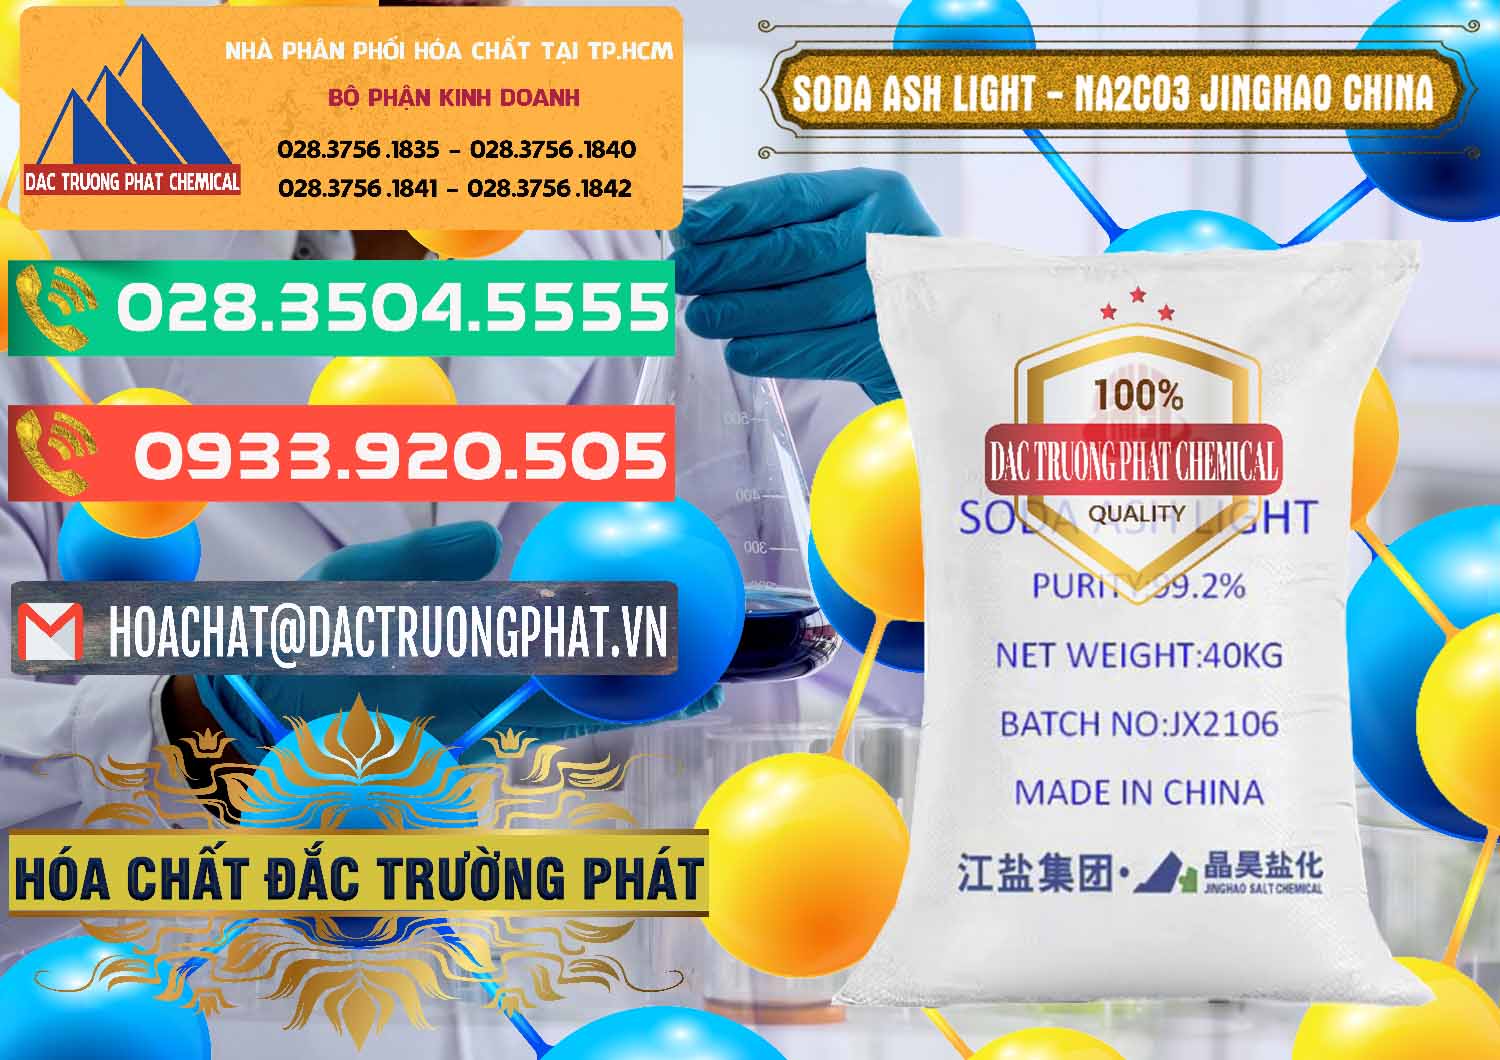 Cty phân phối & bán Soda Ash Light - NA2CO3 Jinghao Trung Quốc China - 0339 - Đơn vị chuyên phân phối _ bán hóa chất tại TP.HCM - congtyhoachat.com.vn